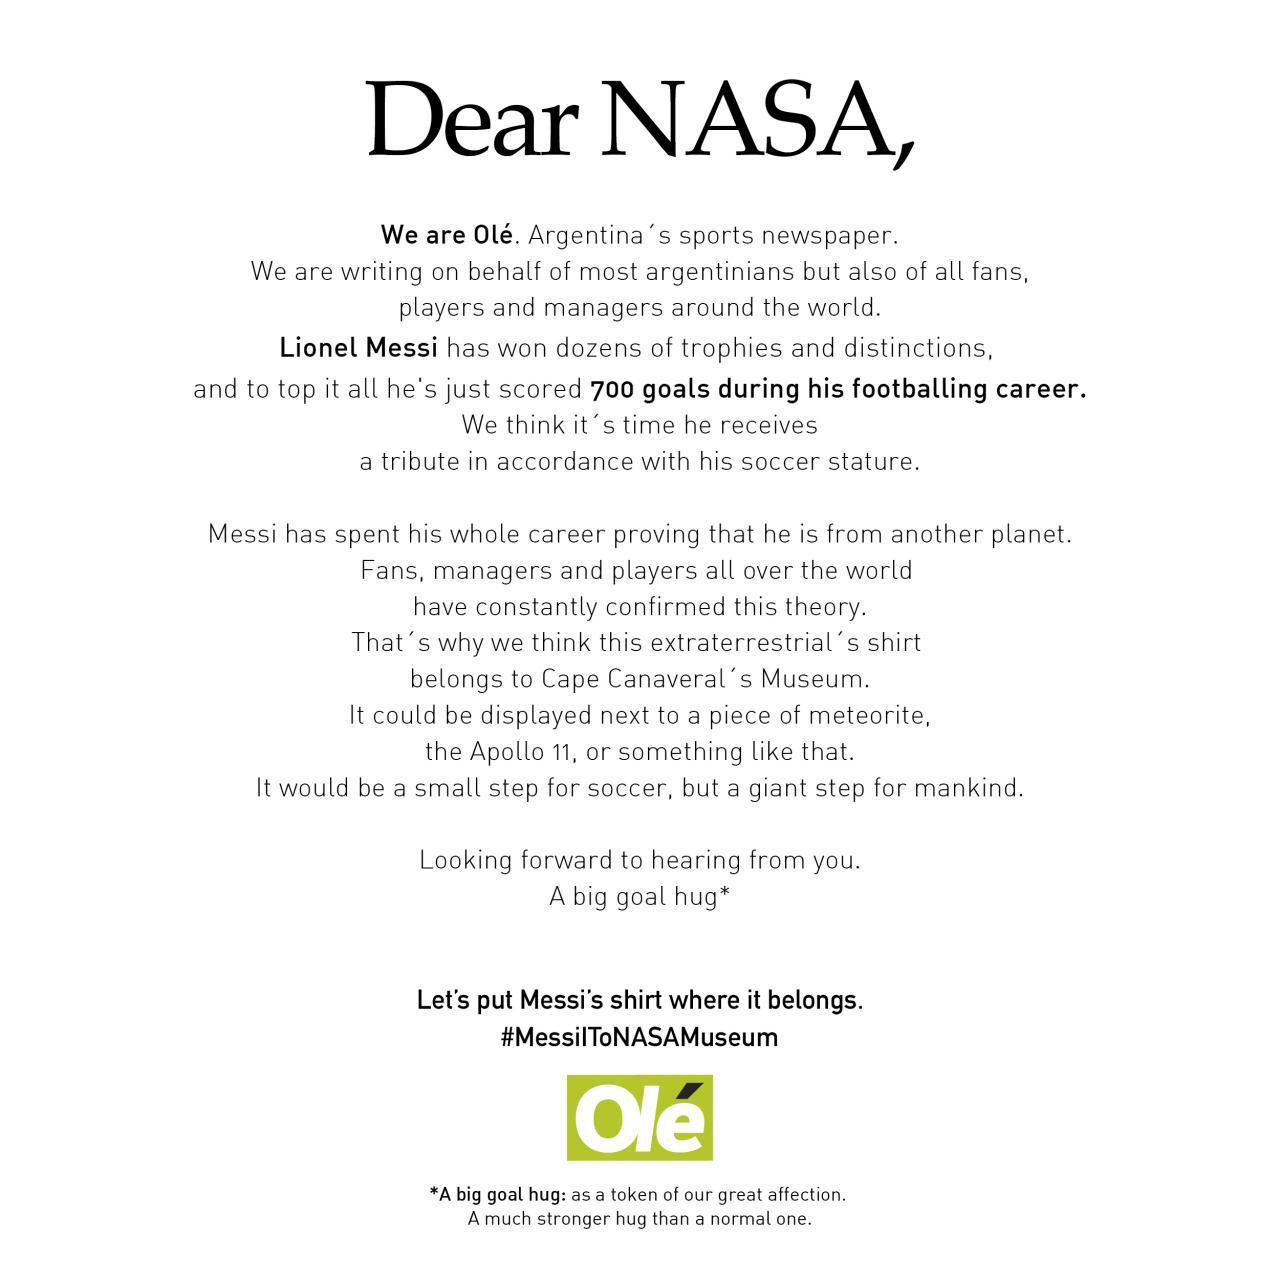 نامه اوله آرژانتین به ناسا